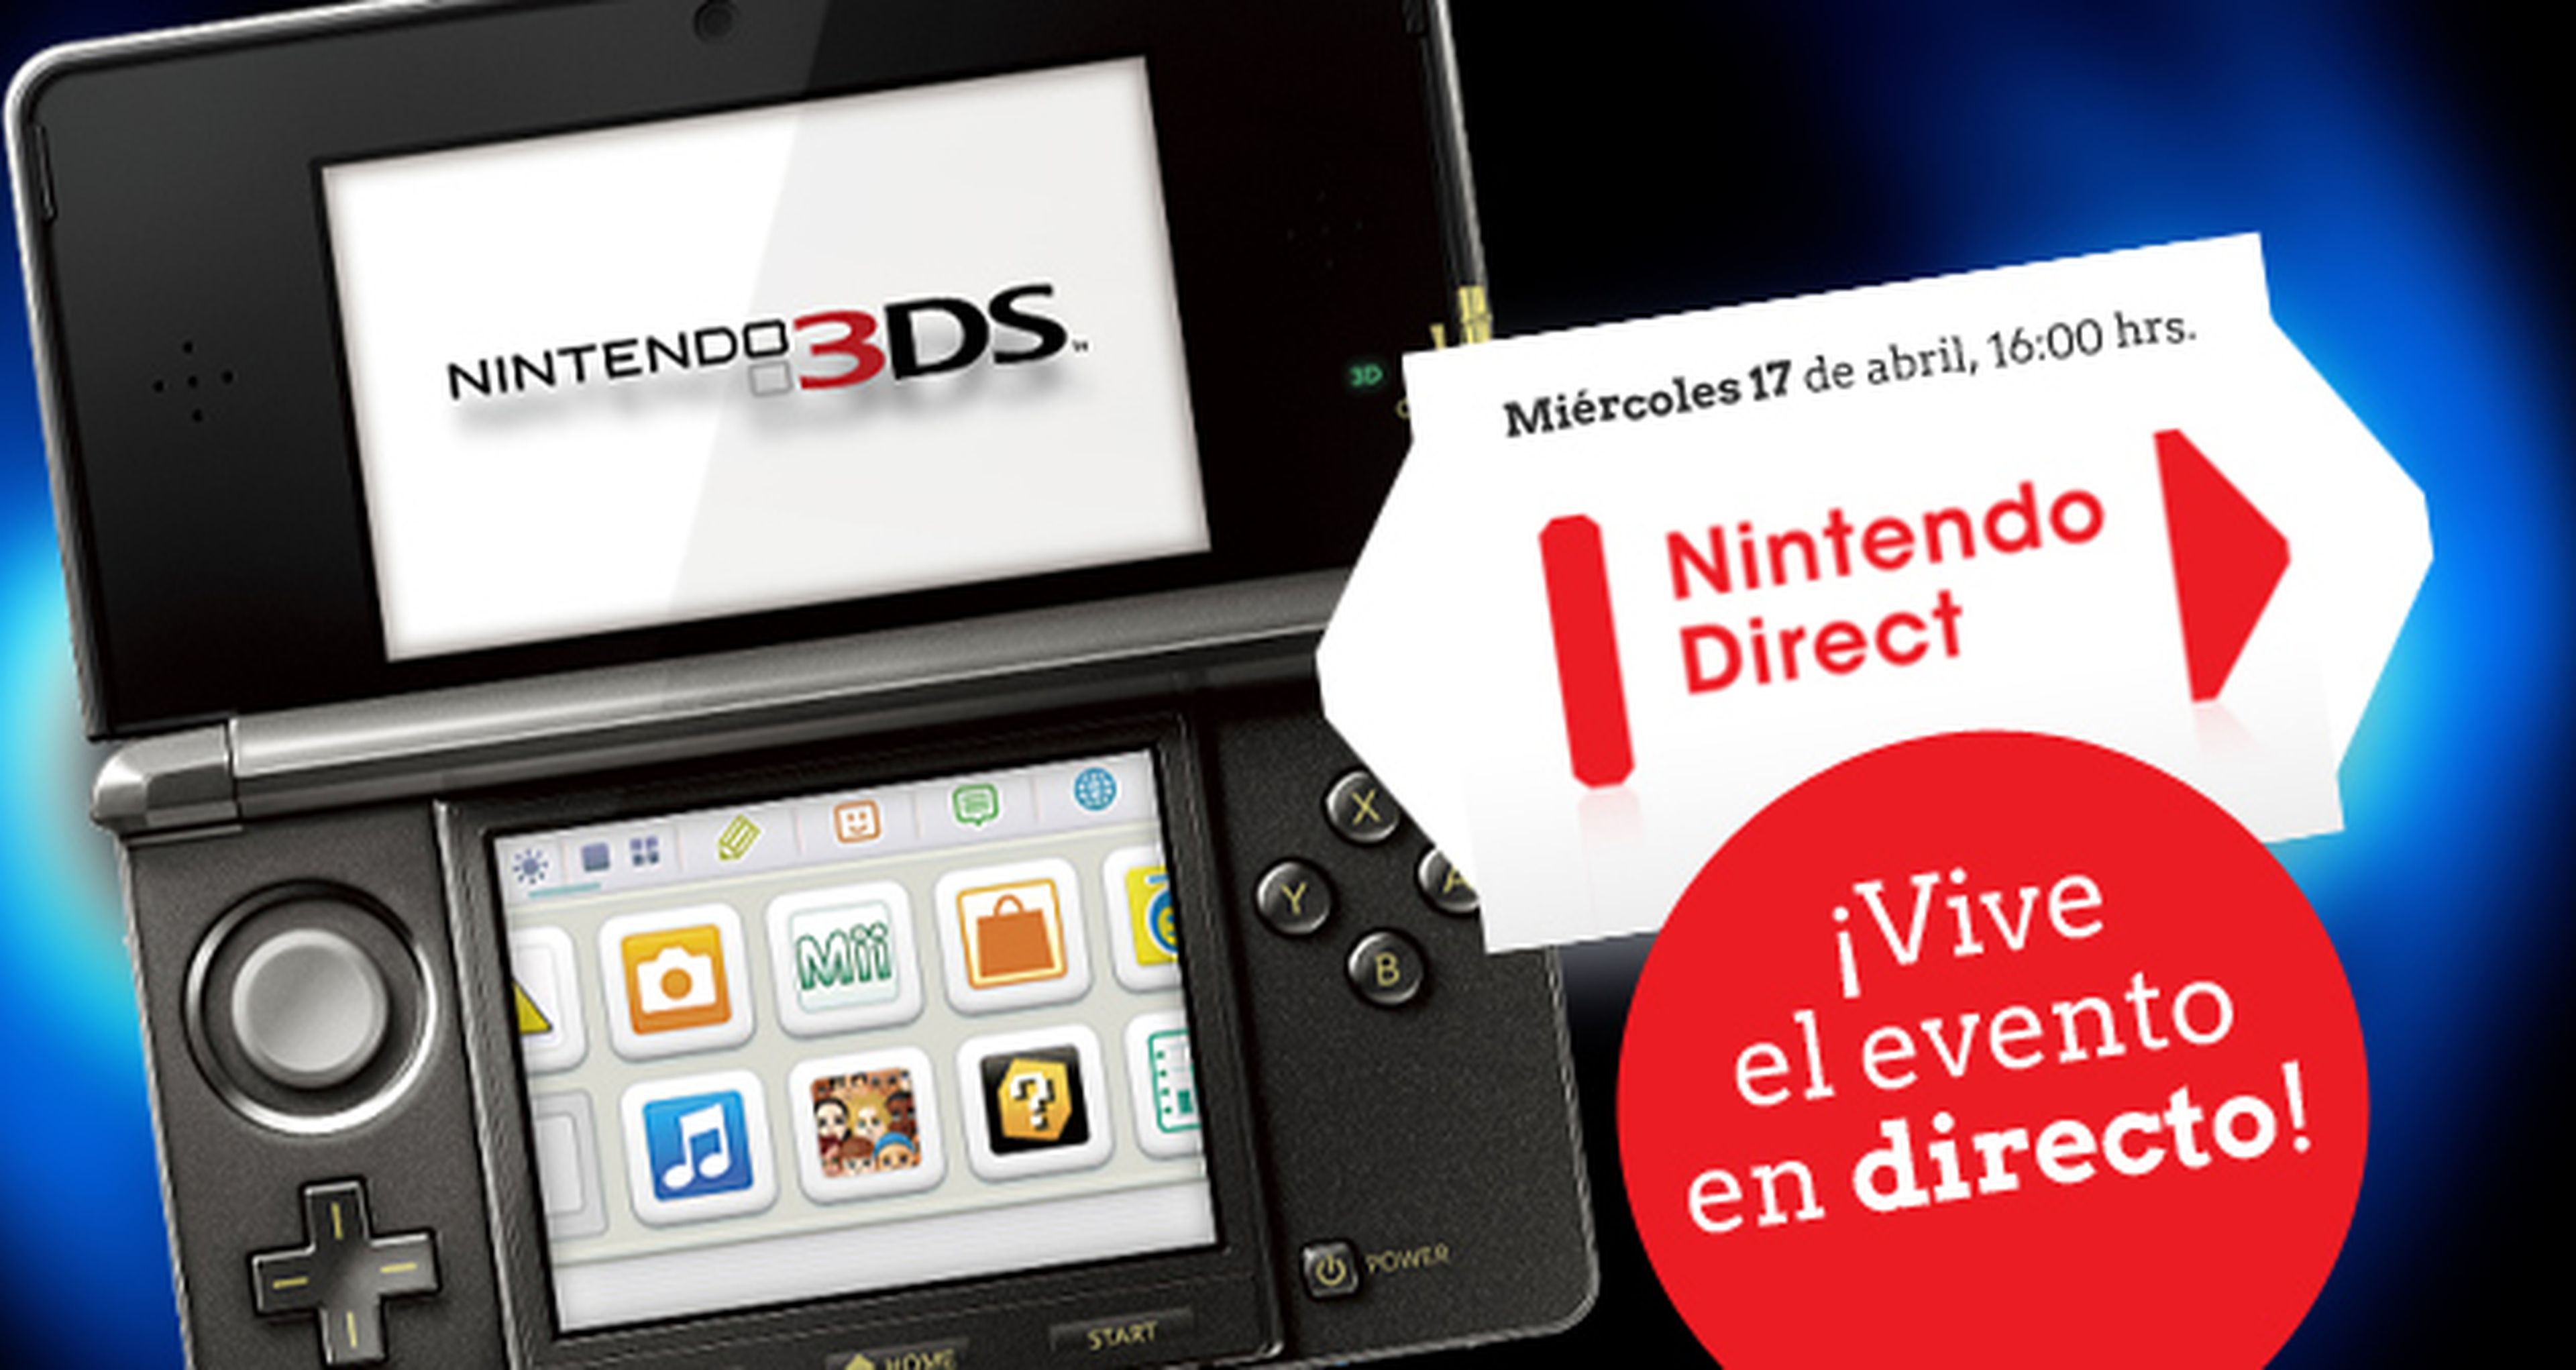 Nuevo Nintendo 3DS Direct el 17 de abril